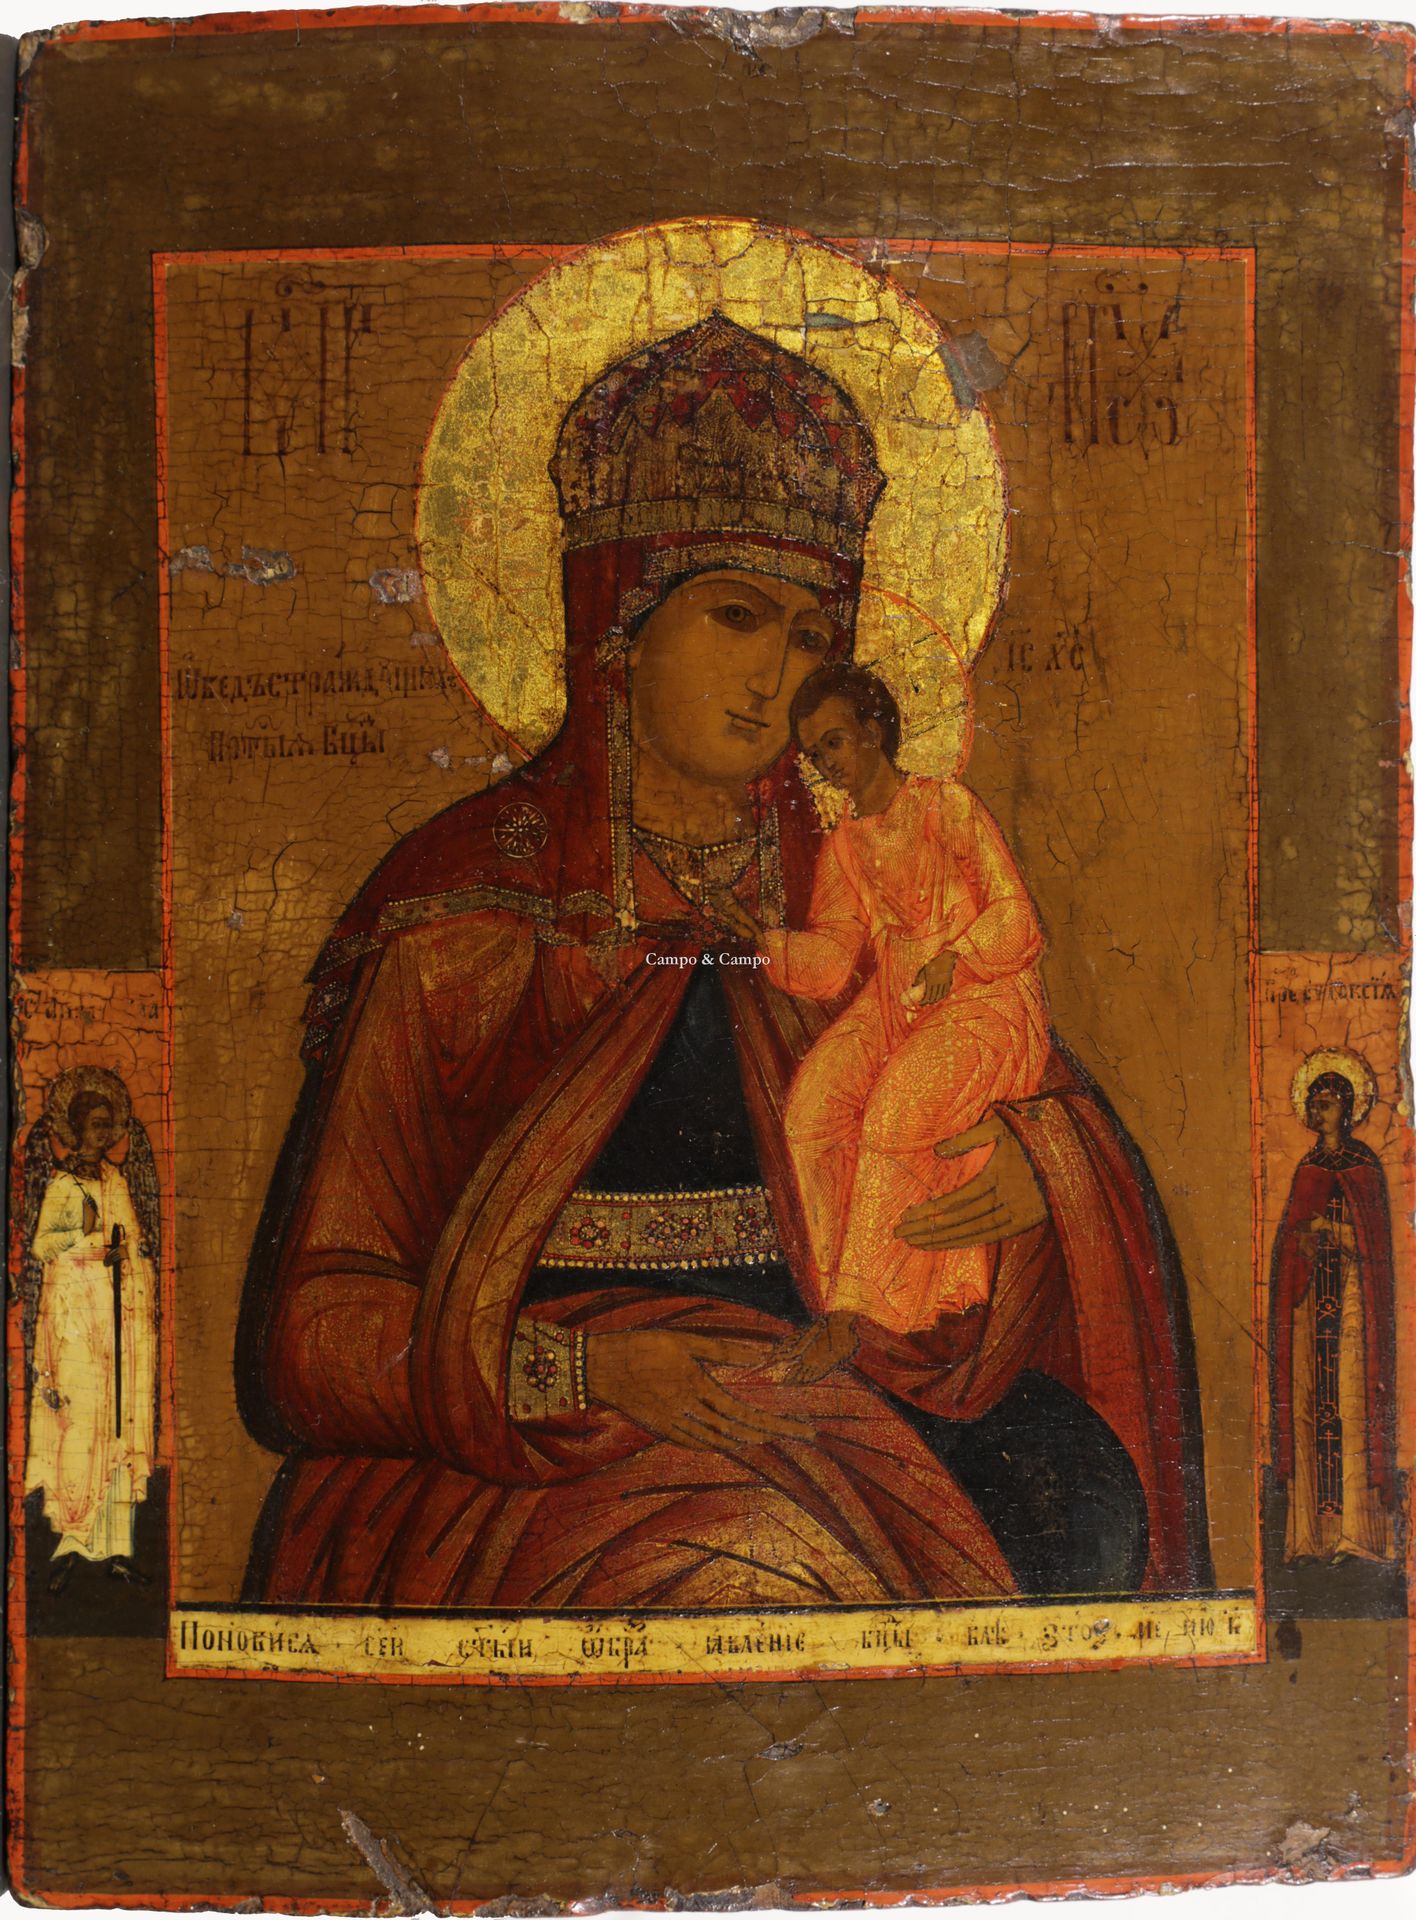 RUSSISCH ICOON Icona russa della Vergine col Bambino
Russisch icoon met de voors&hellip;